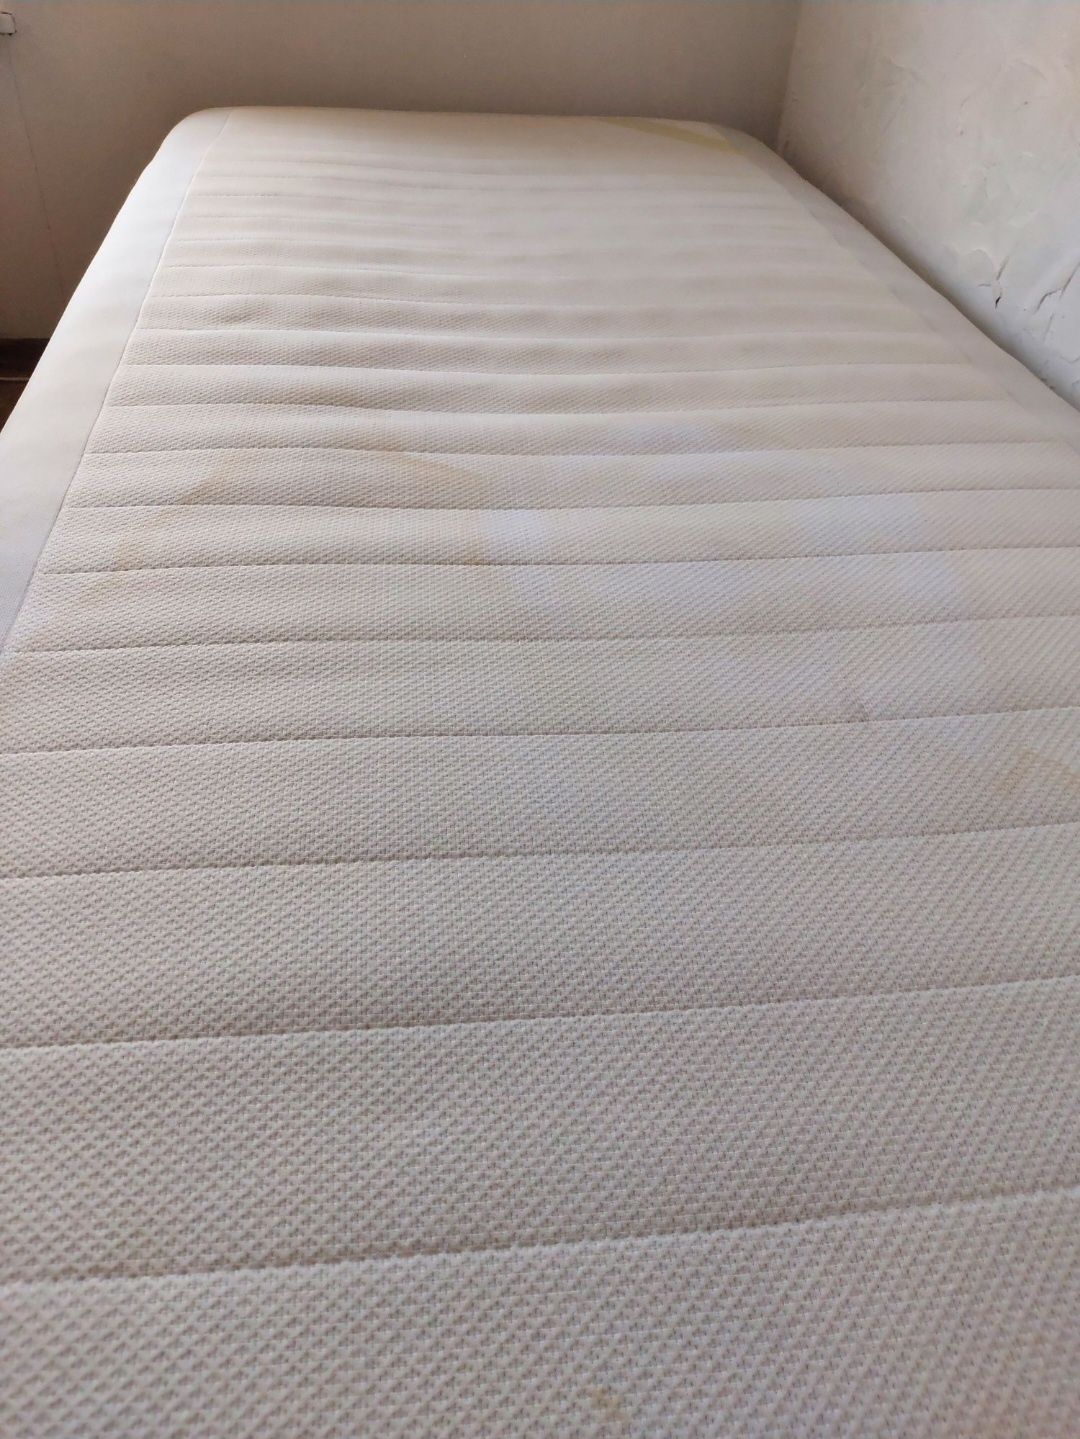 Bardzo wygodne łóżko gościnne kompaktowe z drewnianym stelażem materac